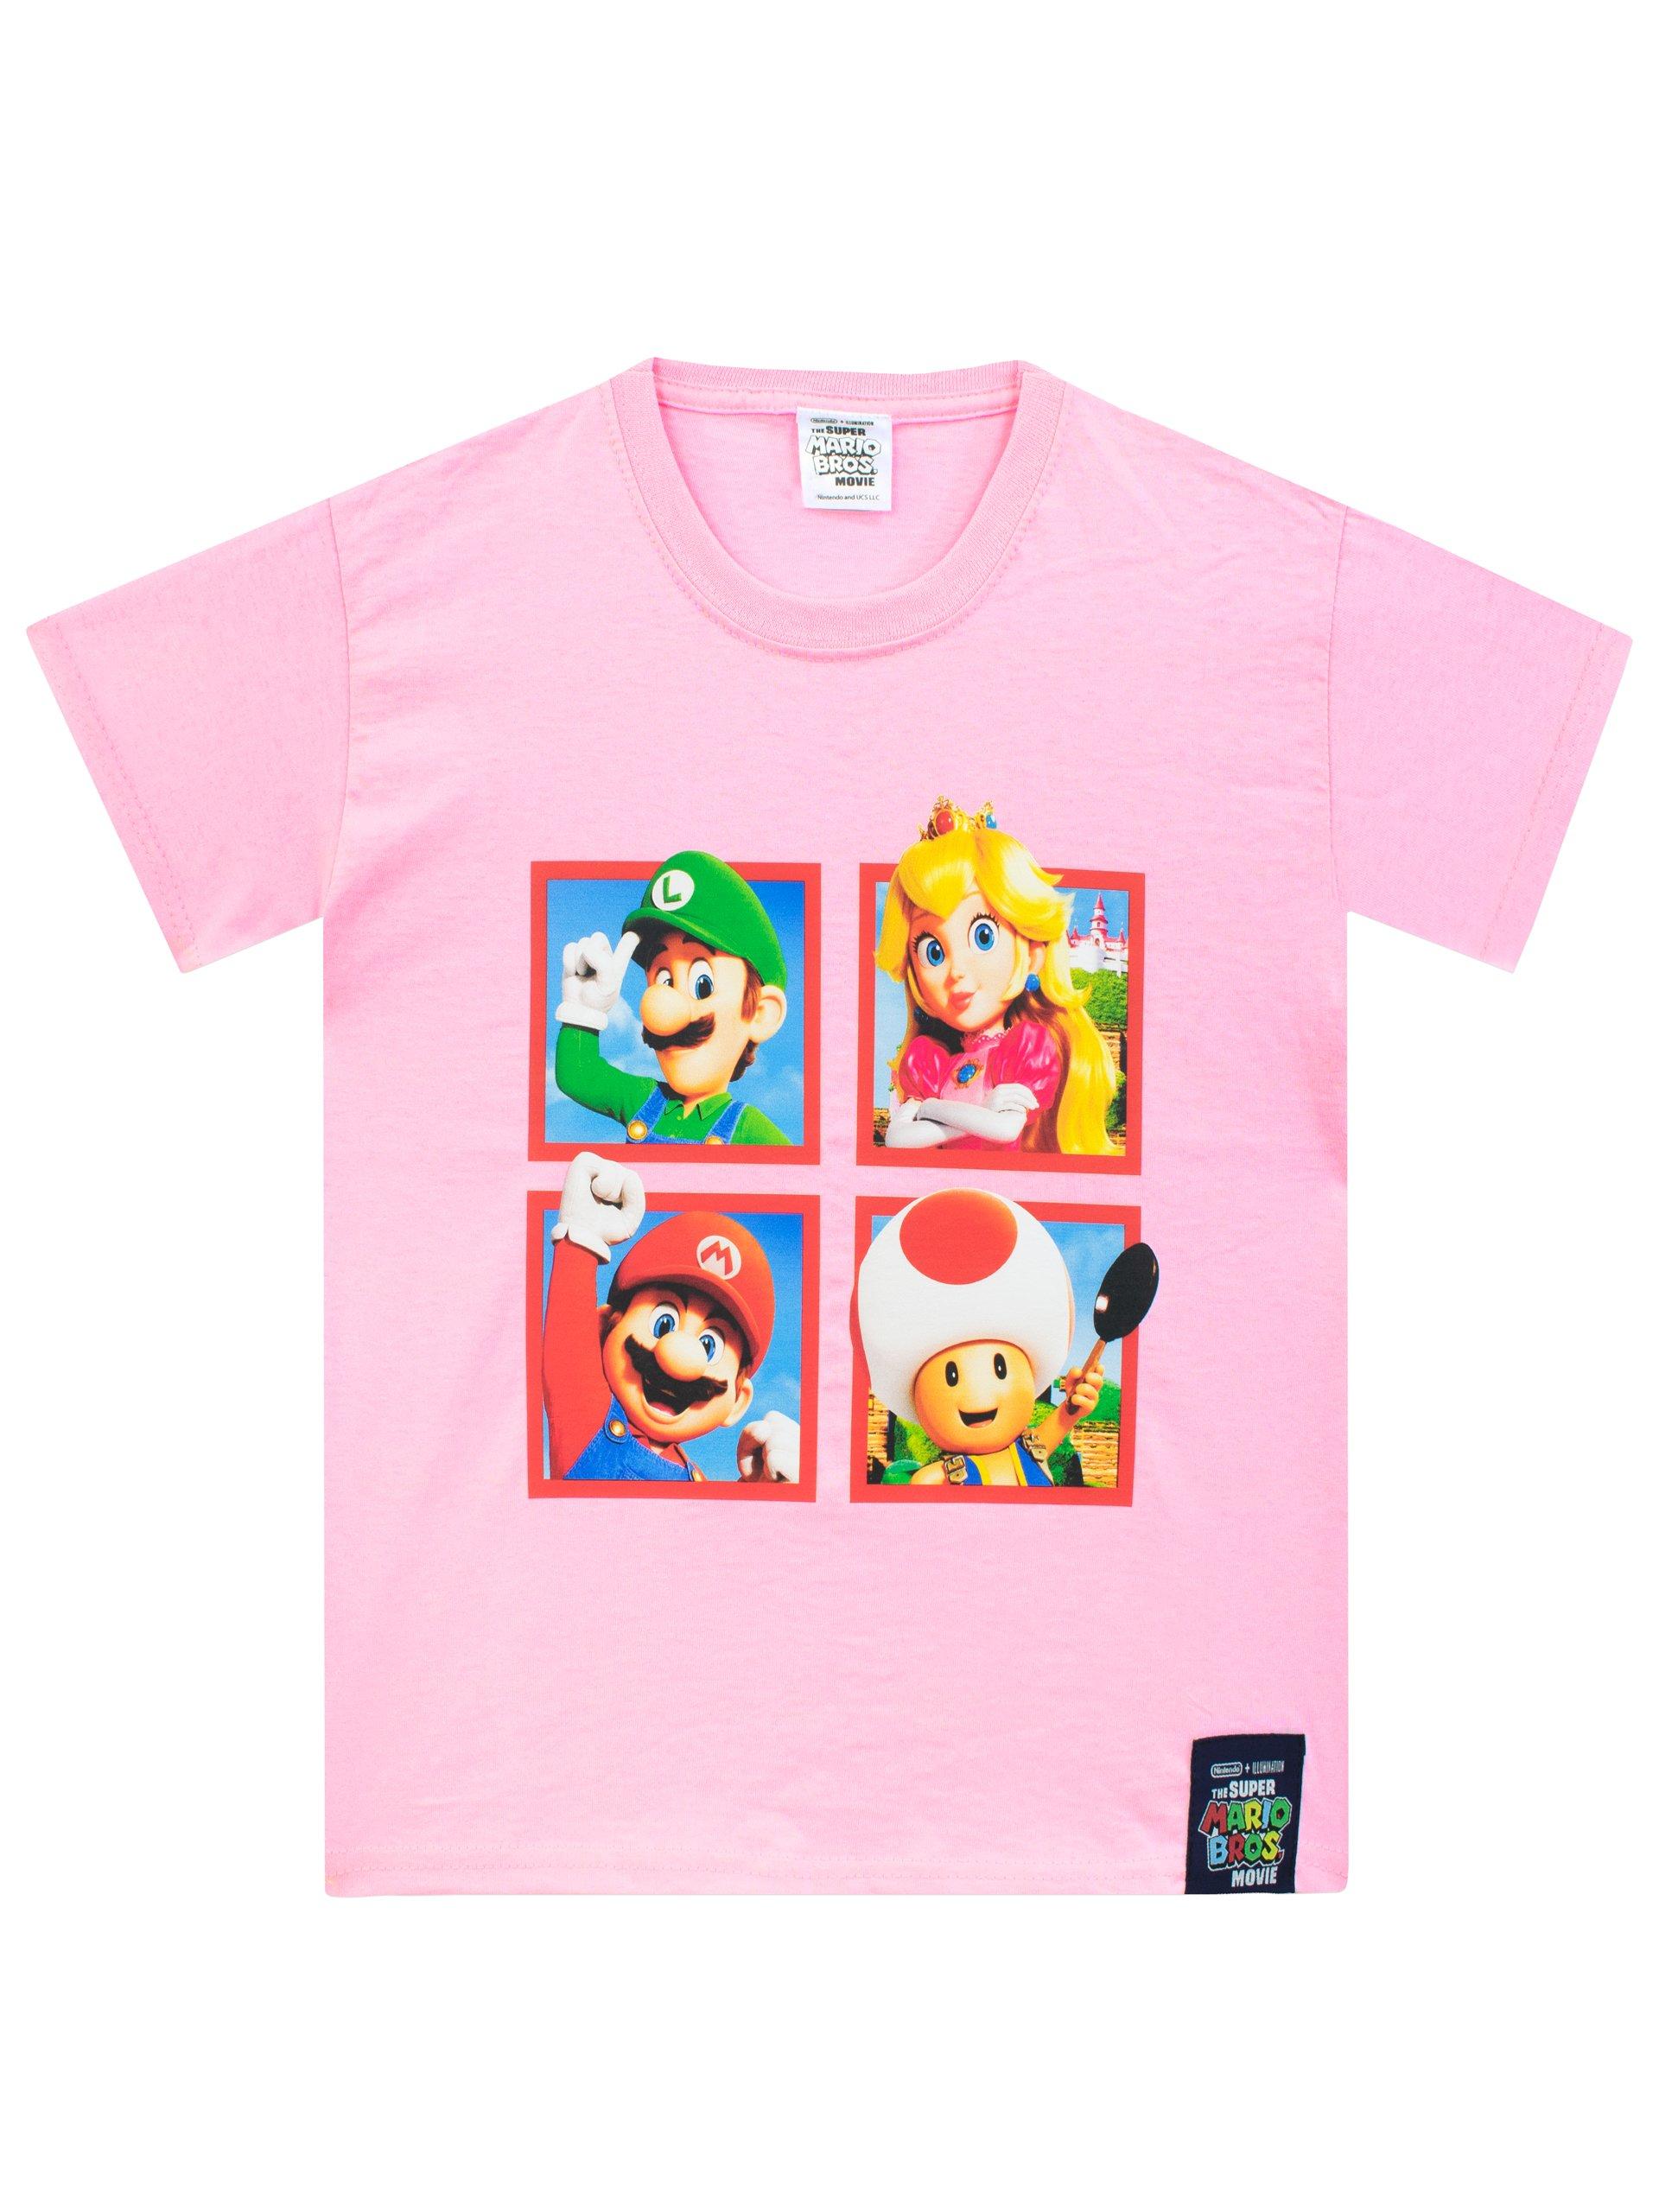 Футболка «Принцесса Персик» Super Mario, розовый 1 шт распродажа воздушные шары из фольги в стиле super mario bros аниме фигурка марио луиджи мультяшные аксессуары для украшения вечеринки на хэ